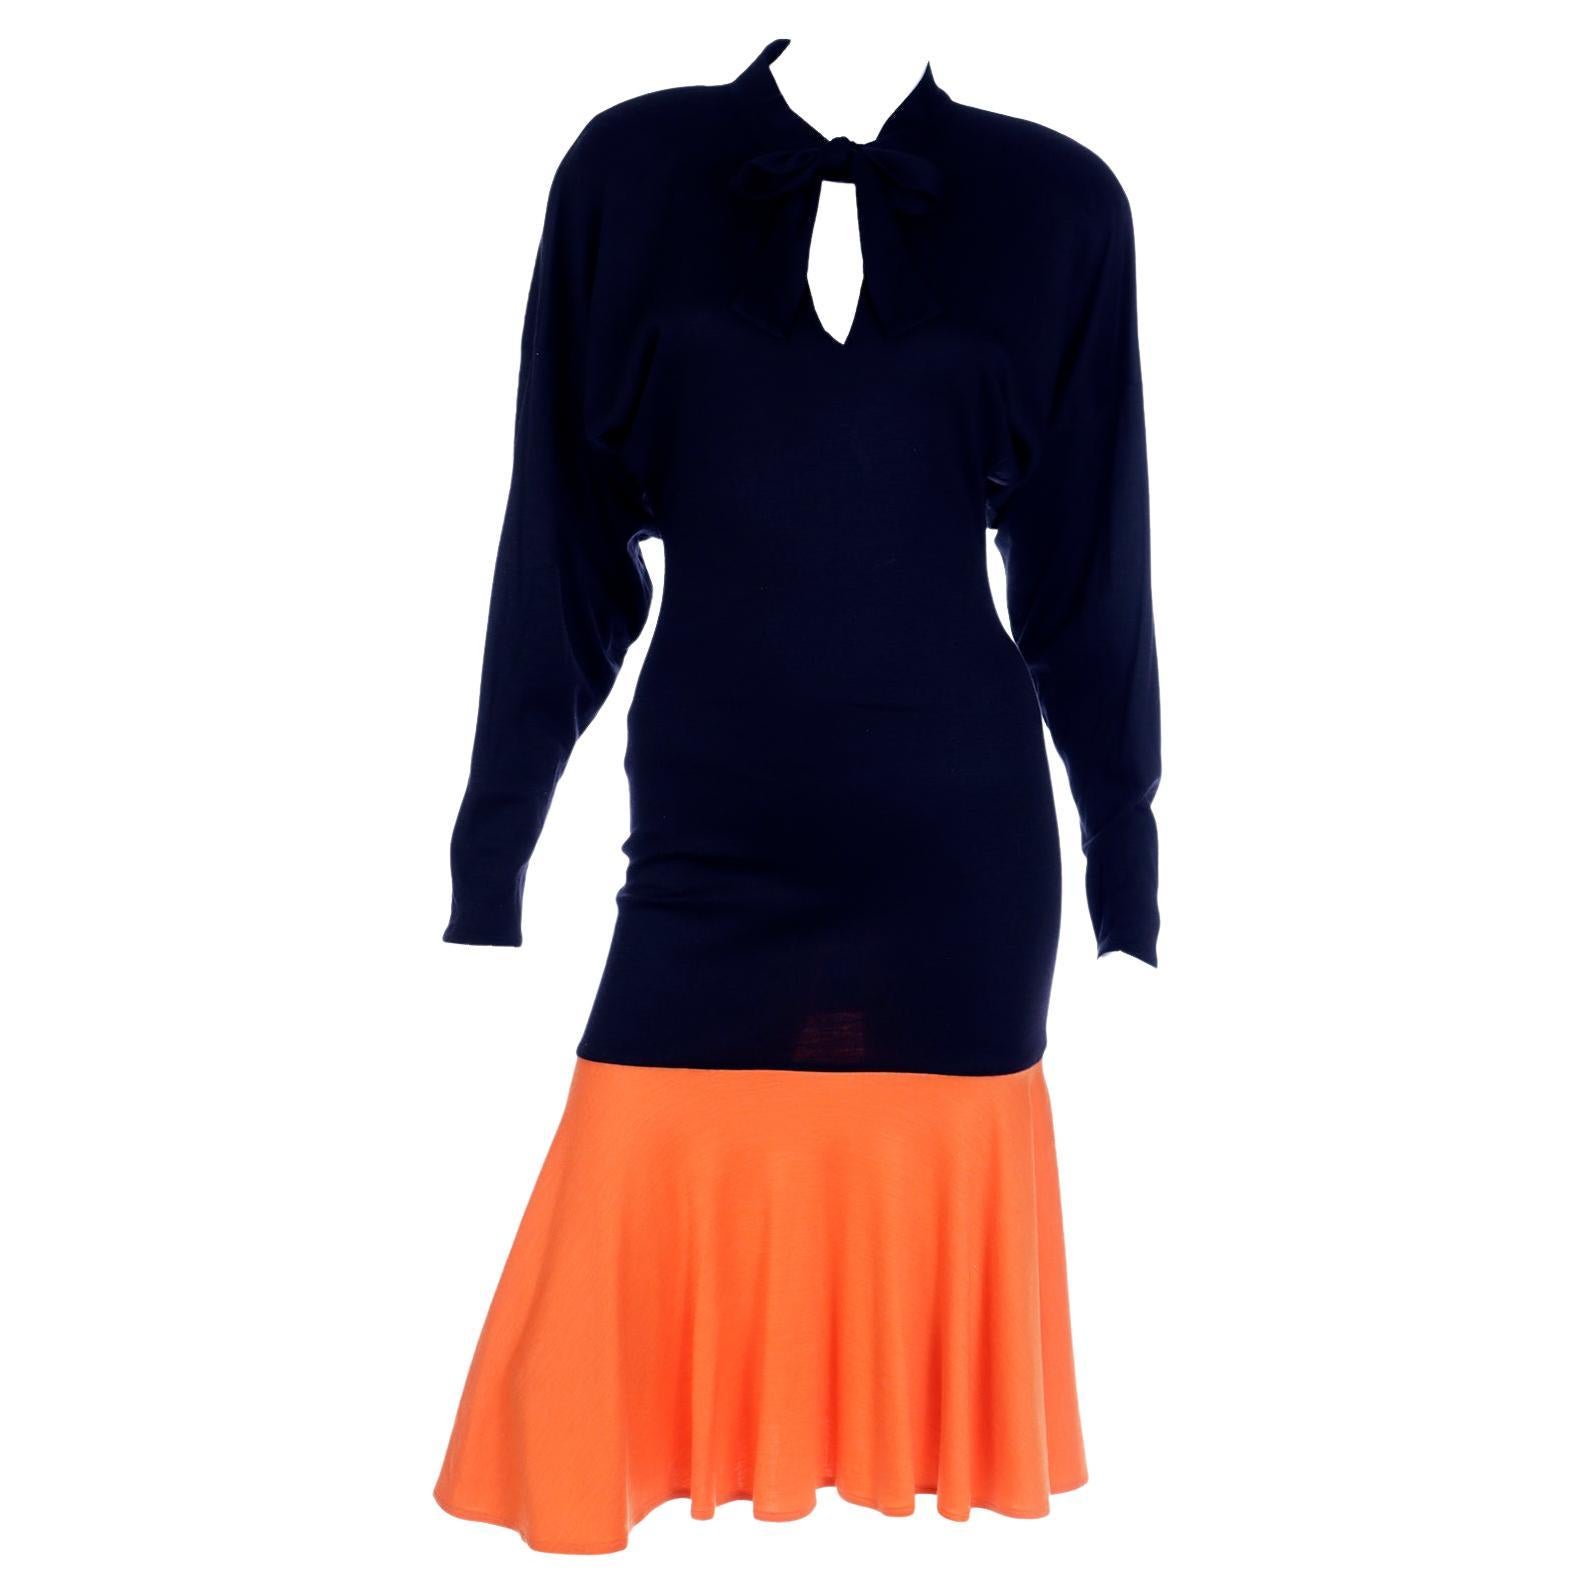 Rare Patrick Kelly Paris F/W 1988 Black & Orange Color Block Vintage Dress For Sale